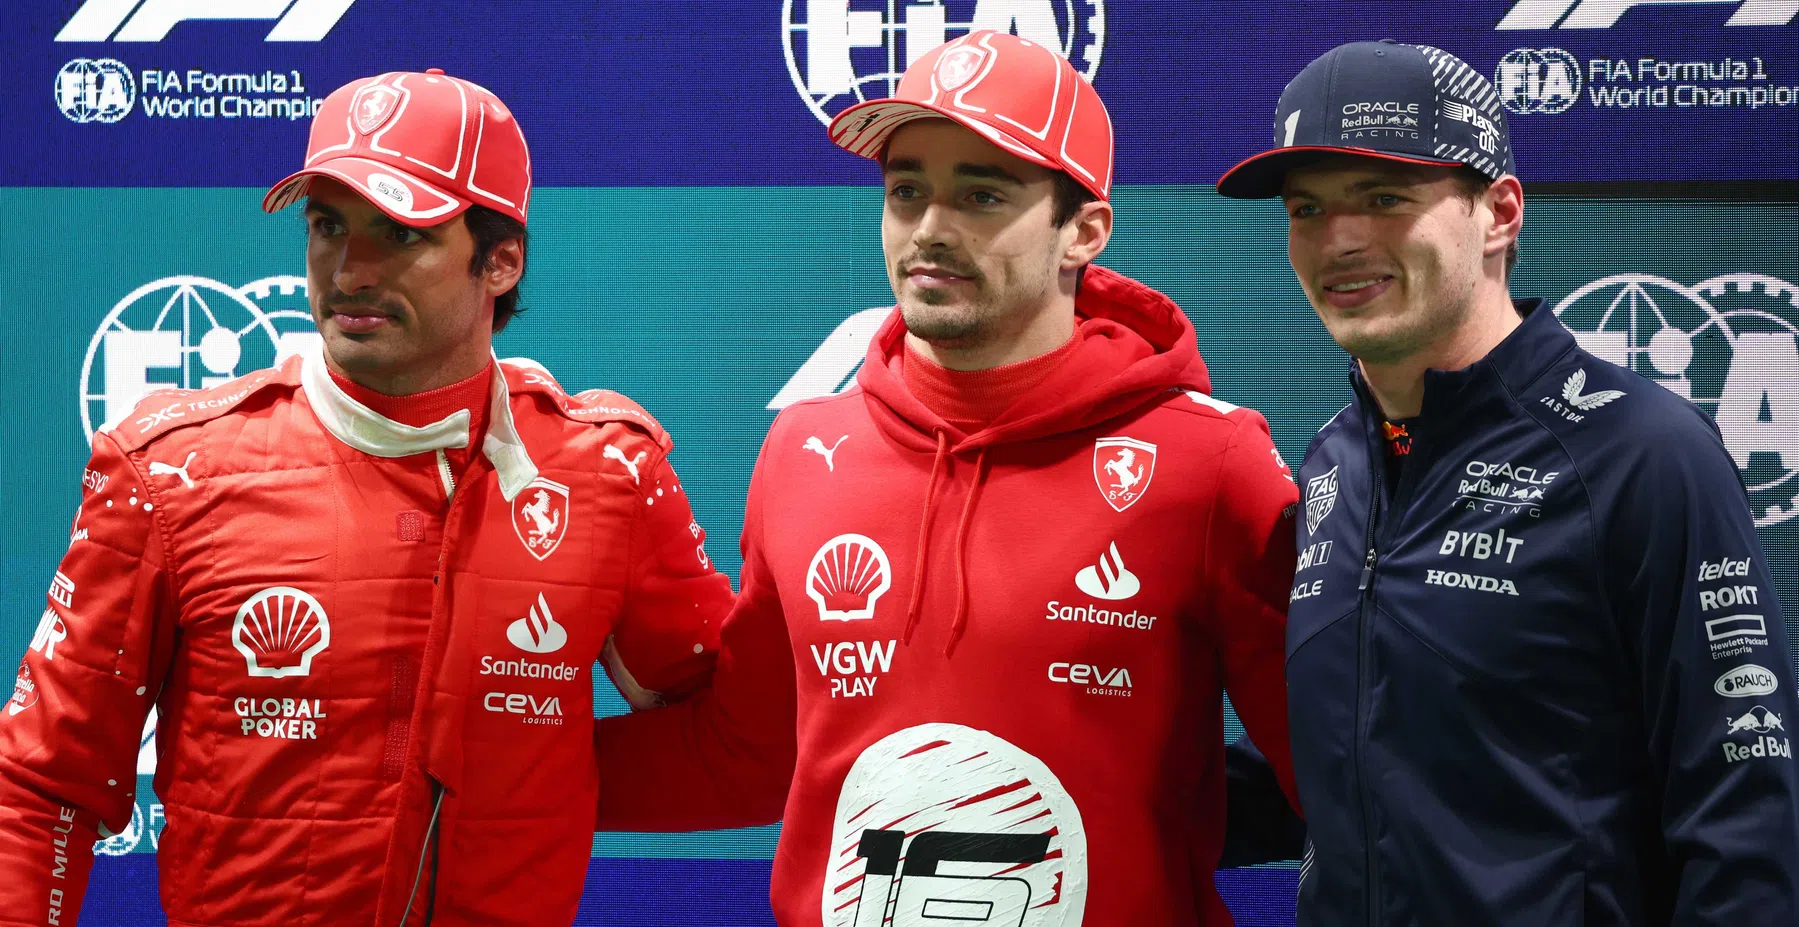 Griglia di partenza | Leclerc e Verstappen davanti, Sainz penalizzato